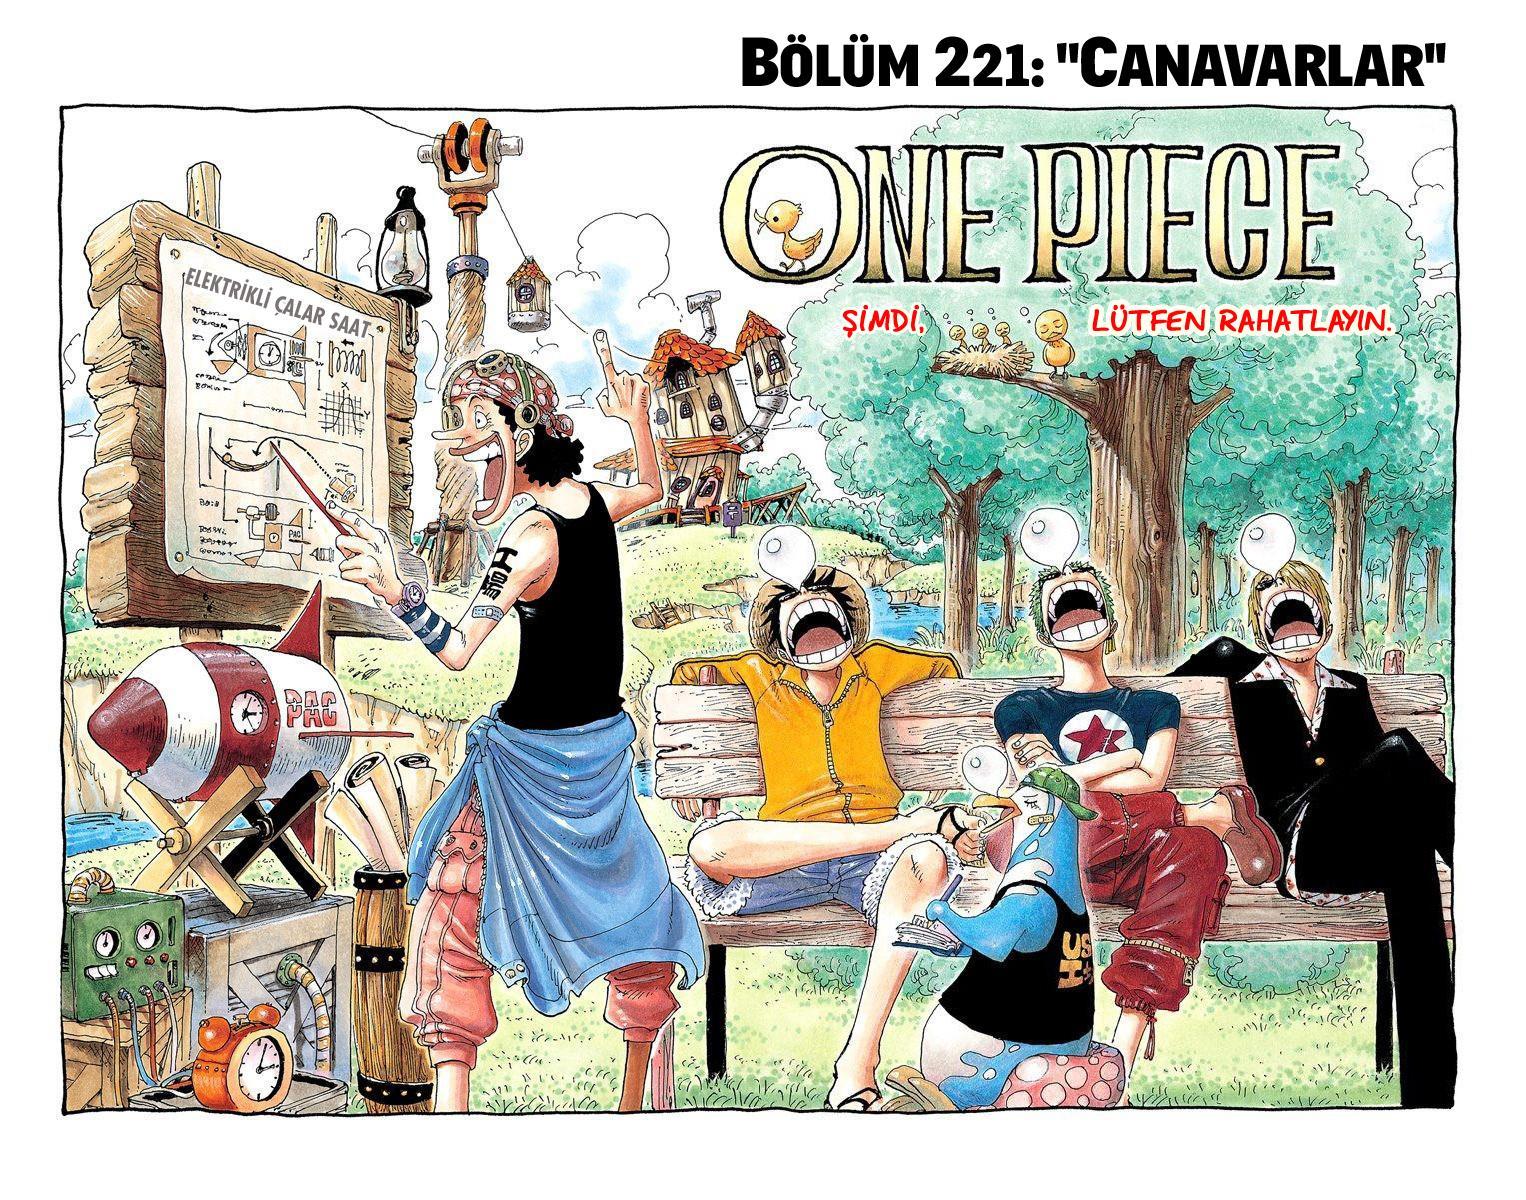 One Piece [Renkli] mangasının 0221 bölümünün 2. sayfasını okuyorsunuz.